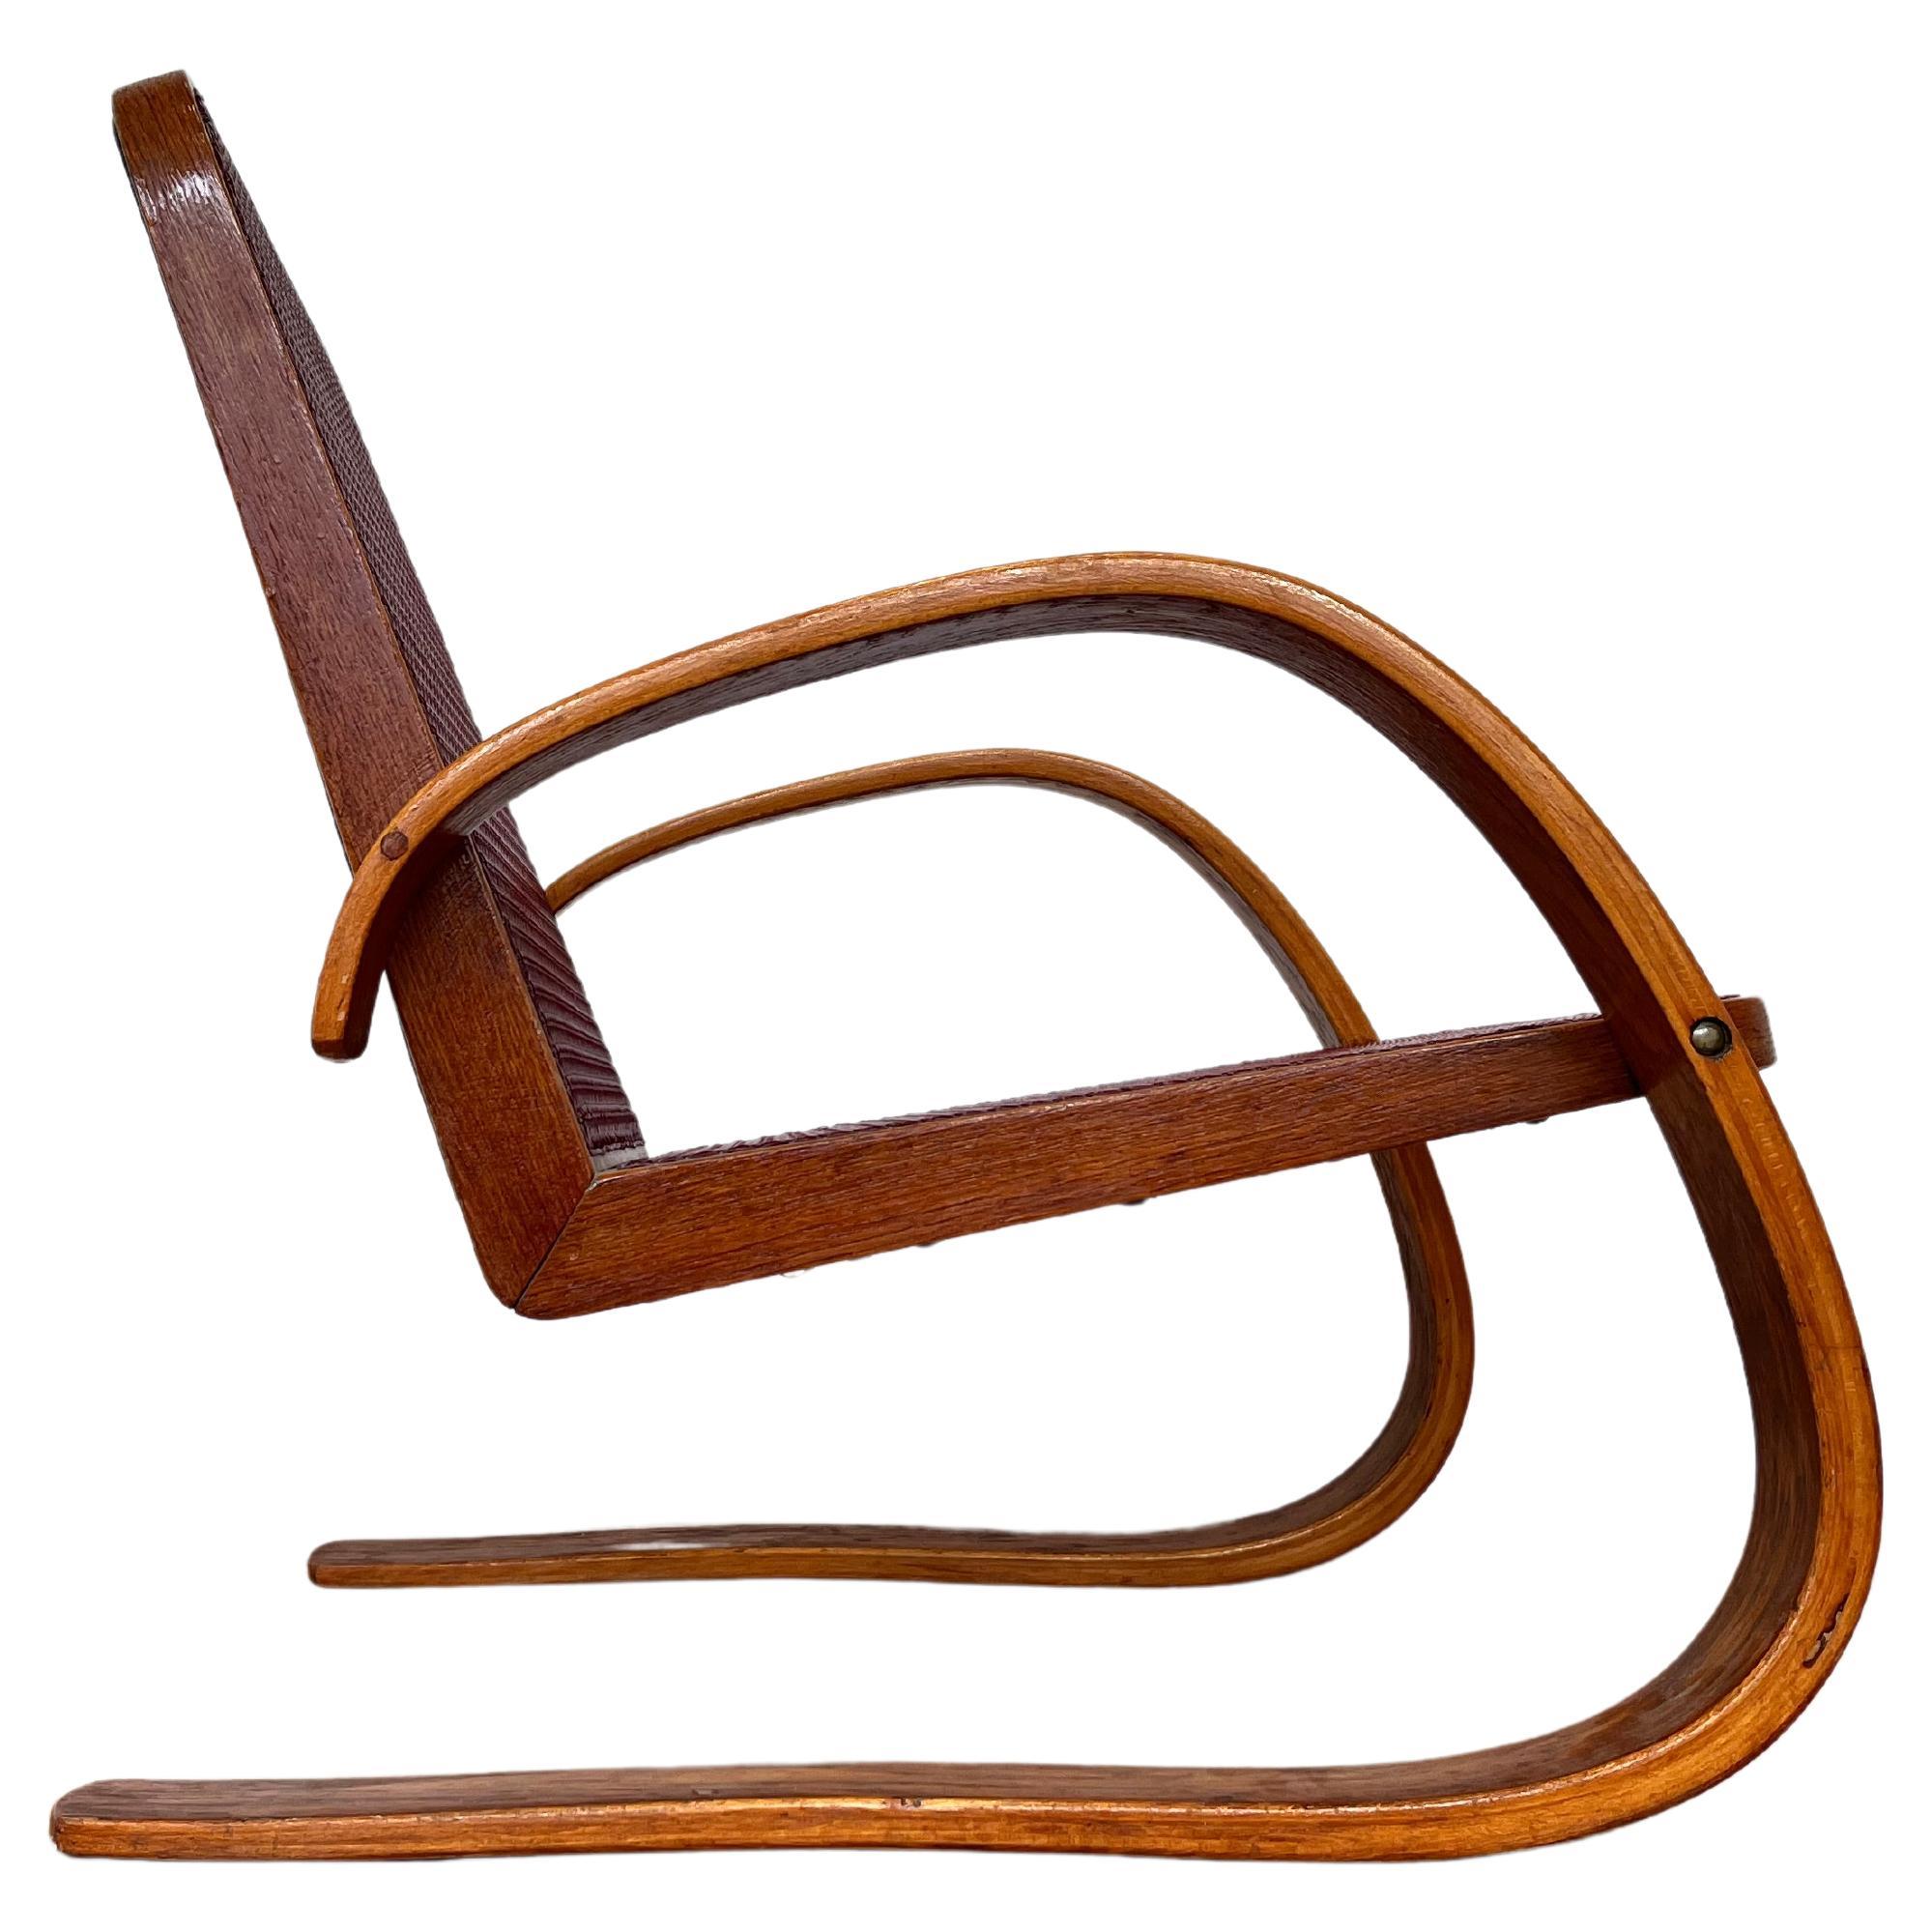 VERY RARE armchair by Miroslav Navrátil for Zdeněk Plesník - 1940s For Sale